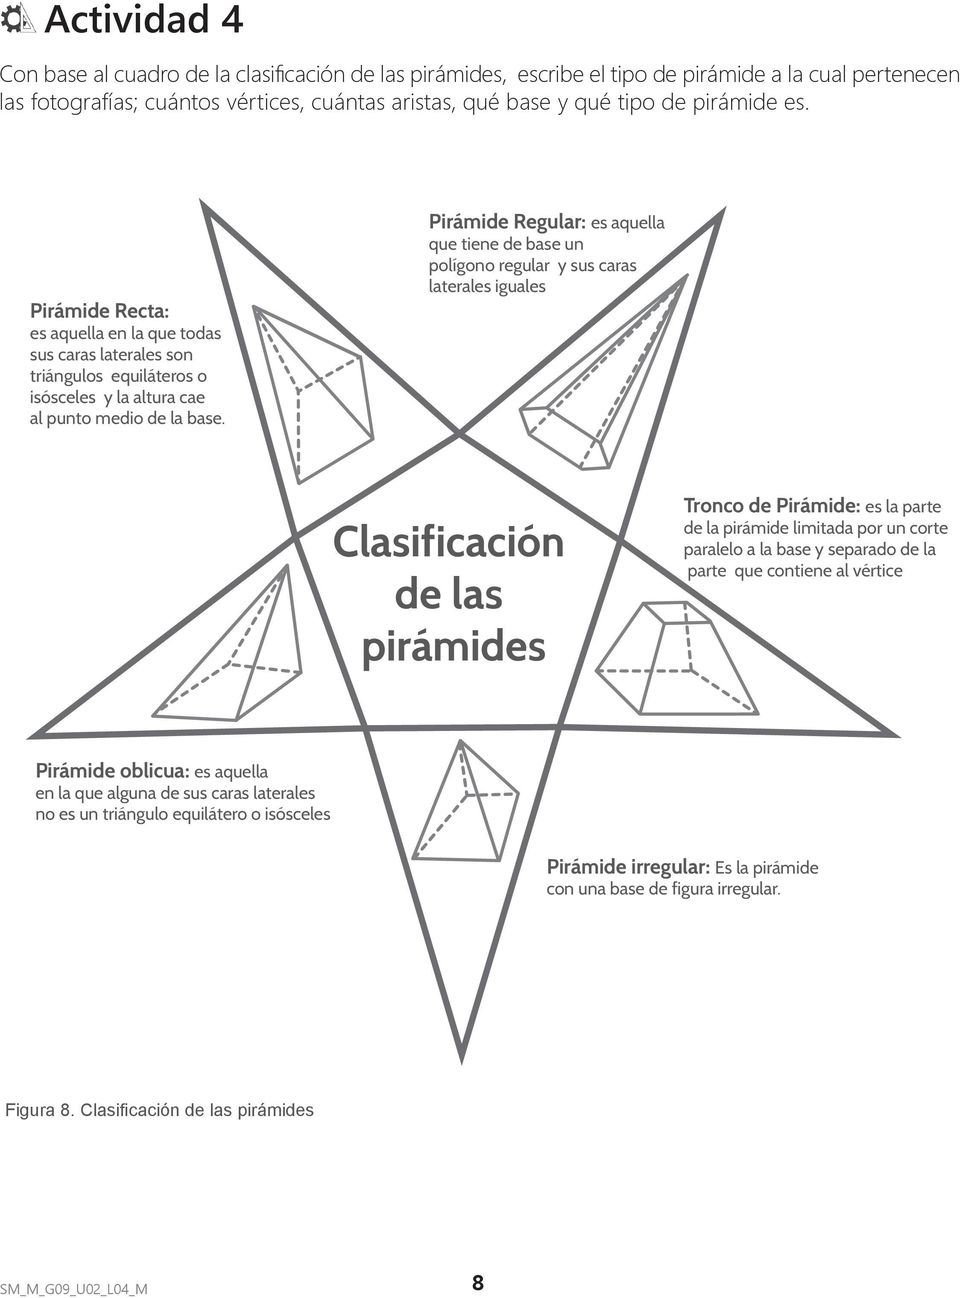 Pirámide Regular: es aquella que tiene de base un polígono regular y sus caras laterales iguales Clasificación de las pirámides Tronco de Pirámide: es la parte de la pirámide limitada por un corte